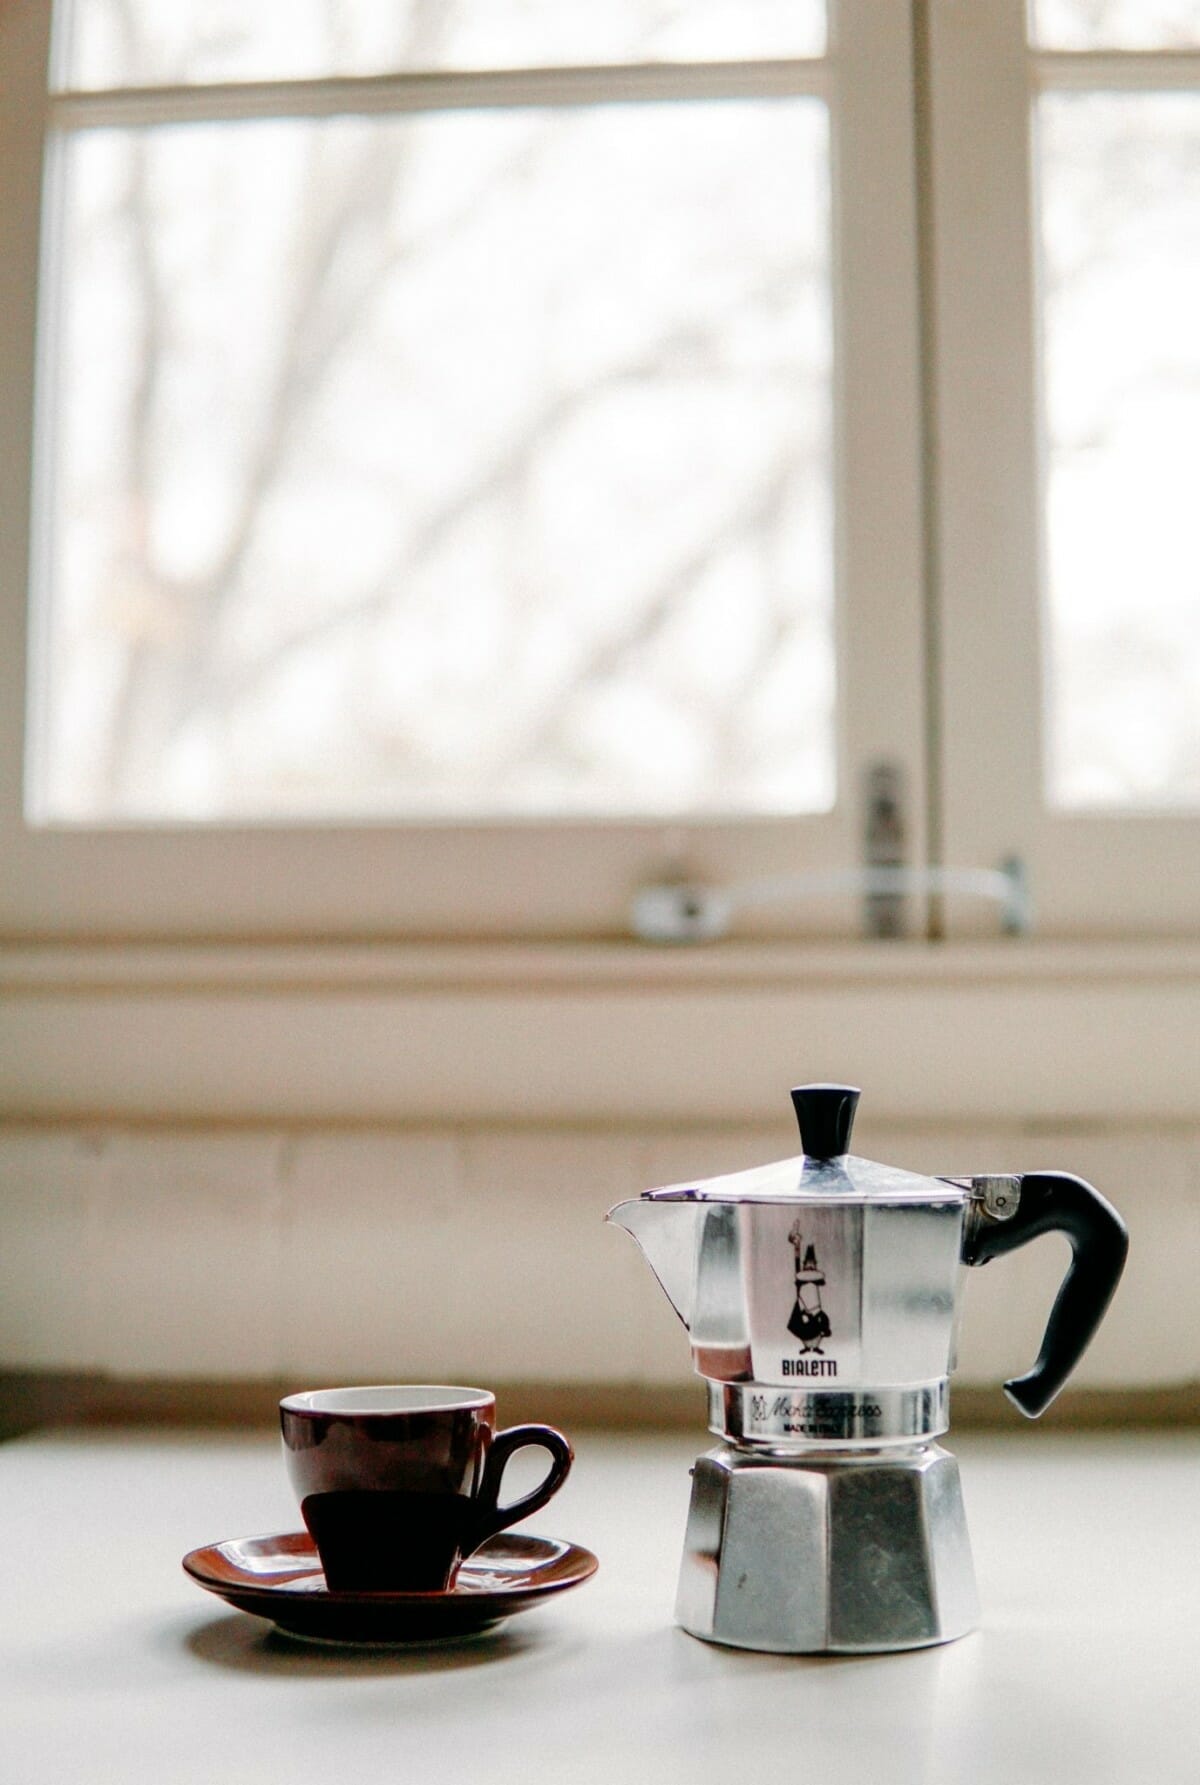 moka pot and espresso cup